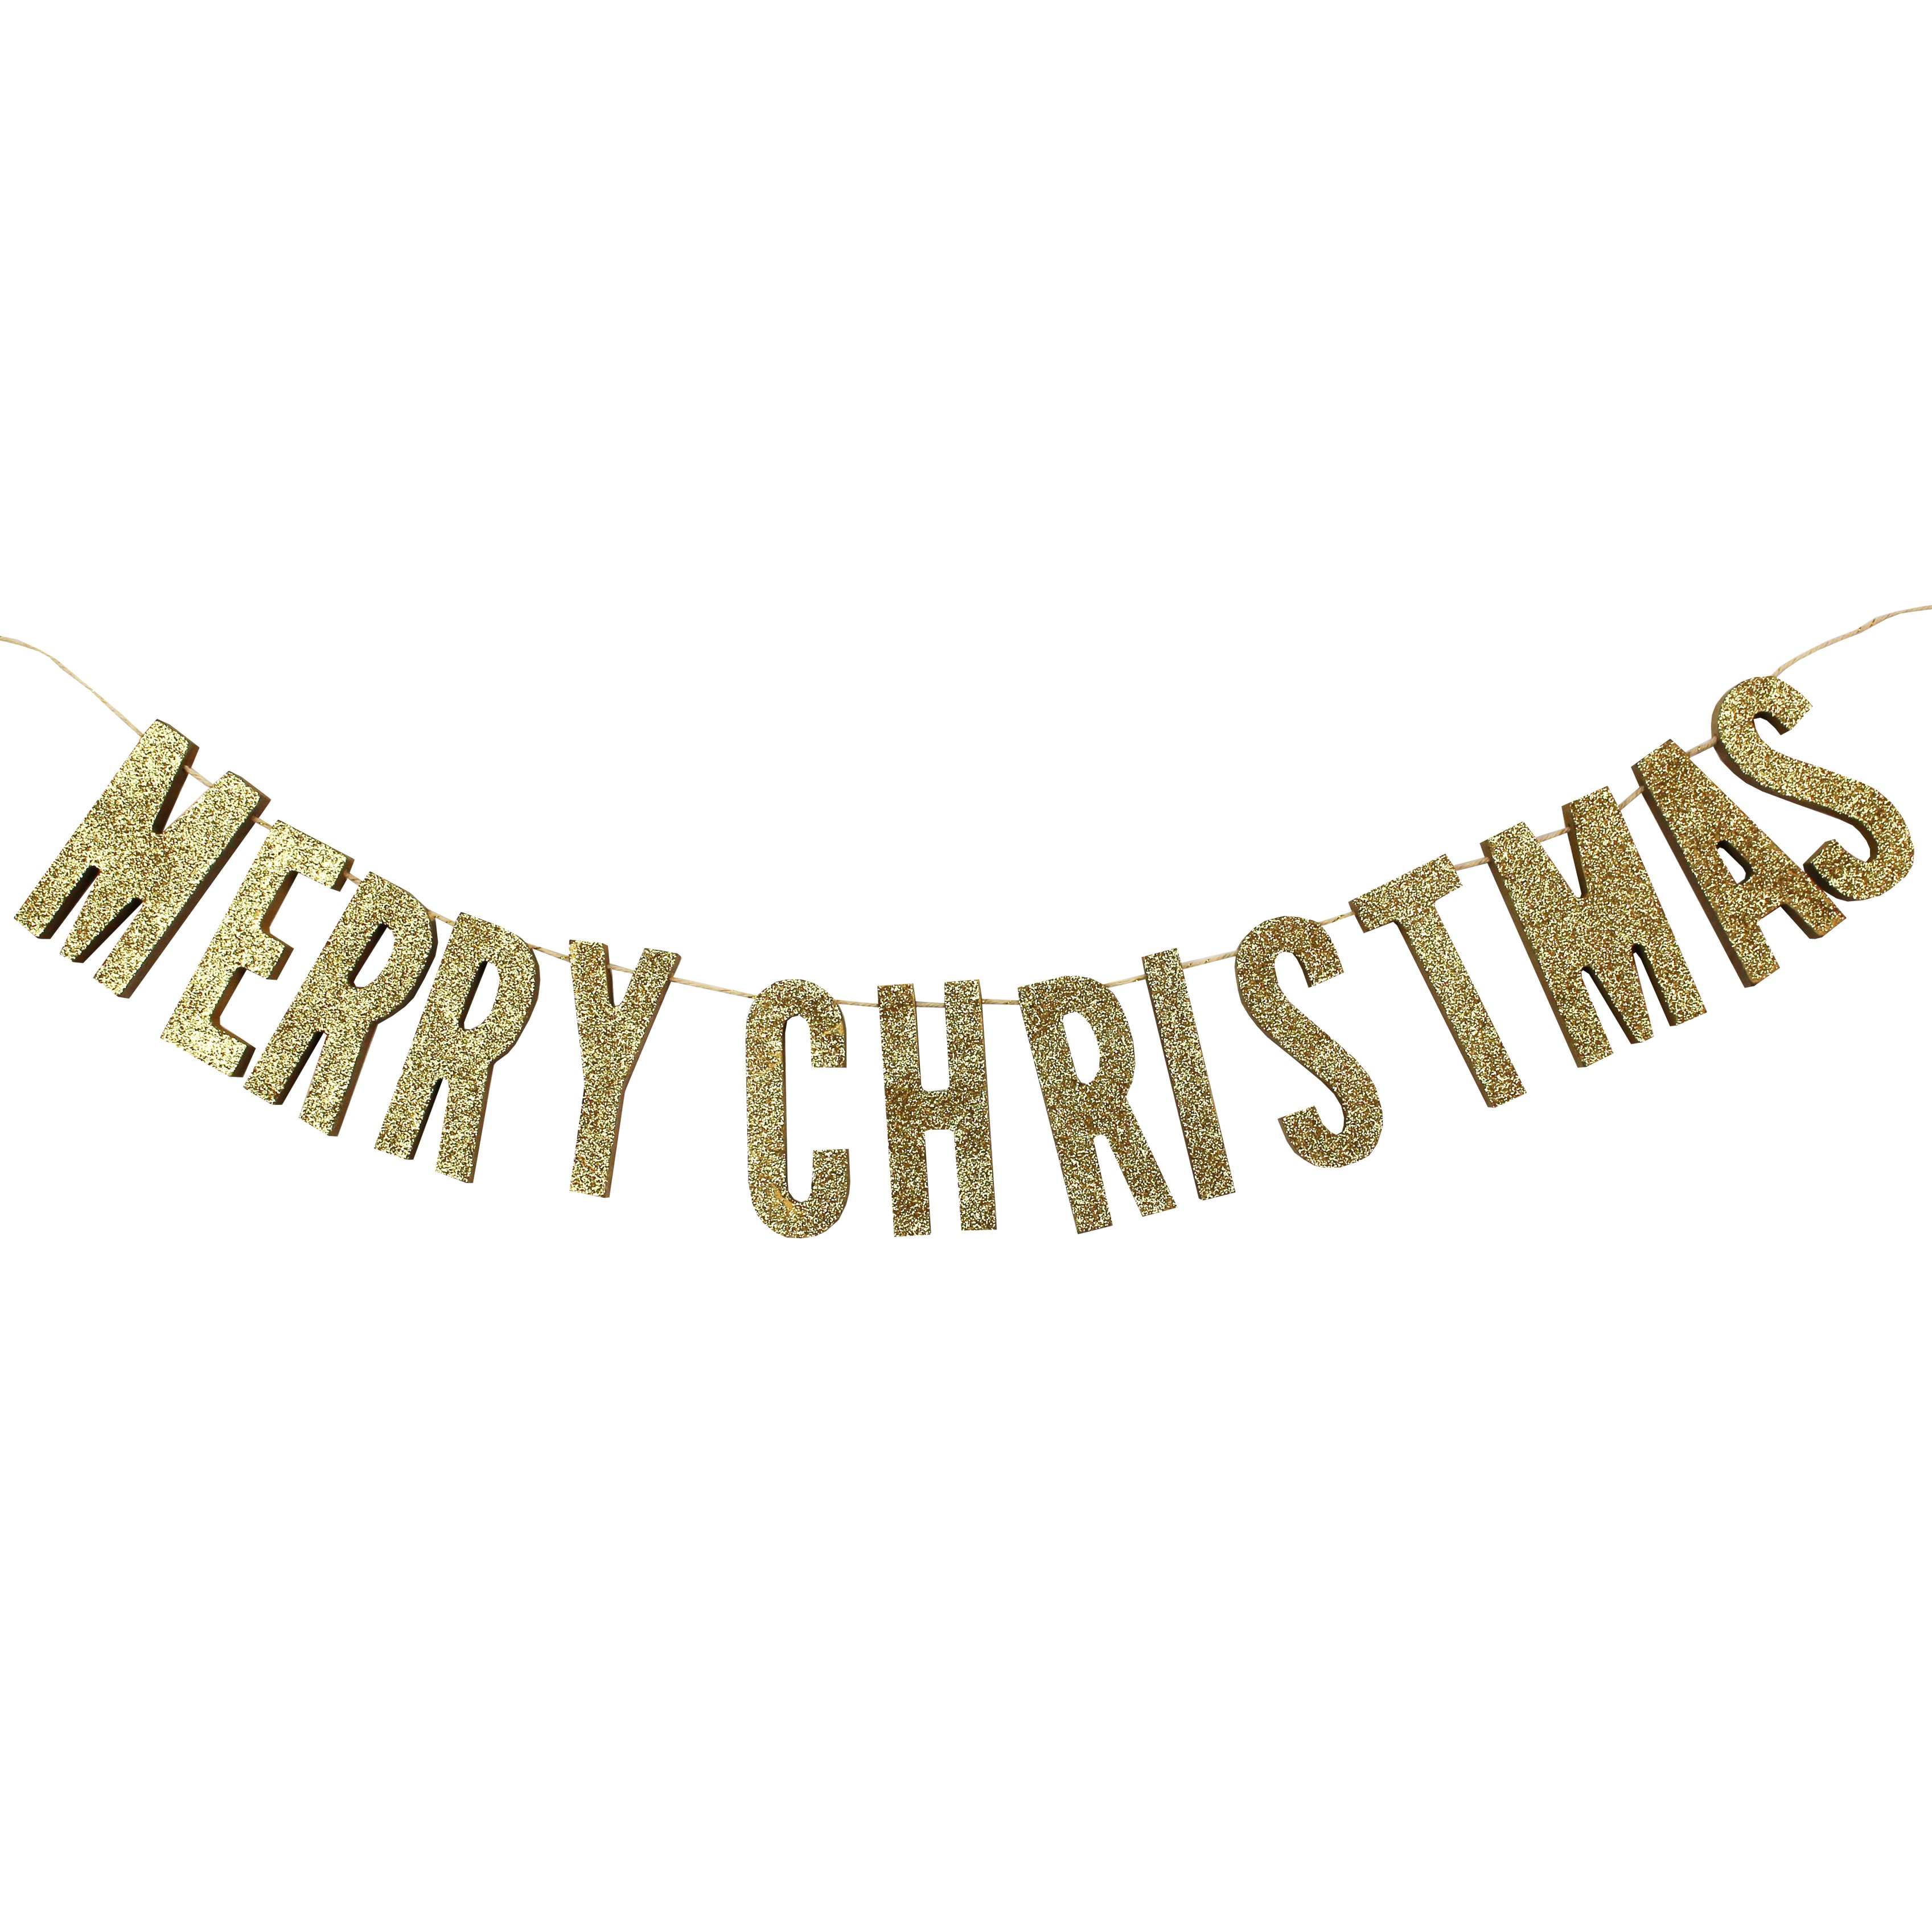 Jule guirlande med guld "Merry Christmas" bogstager i træ fra Gingerray